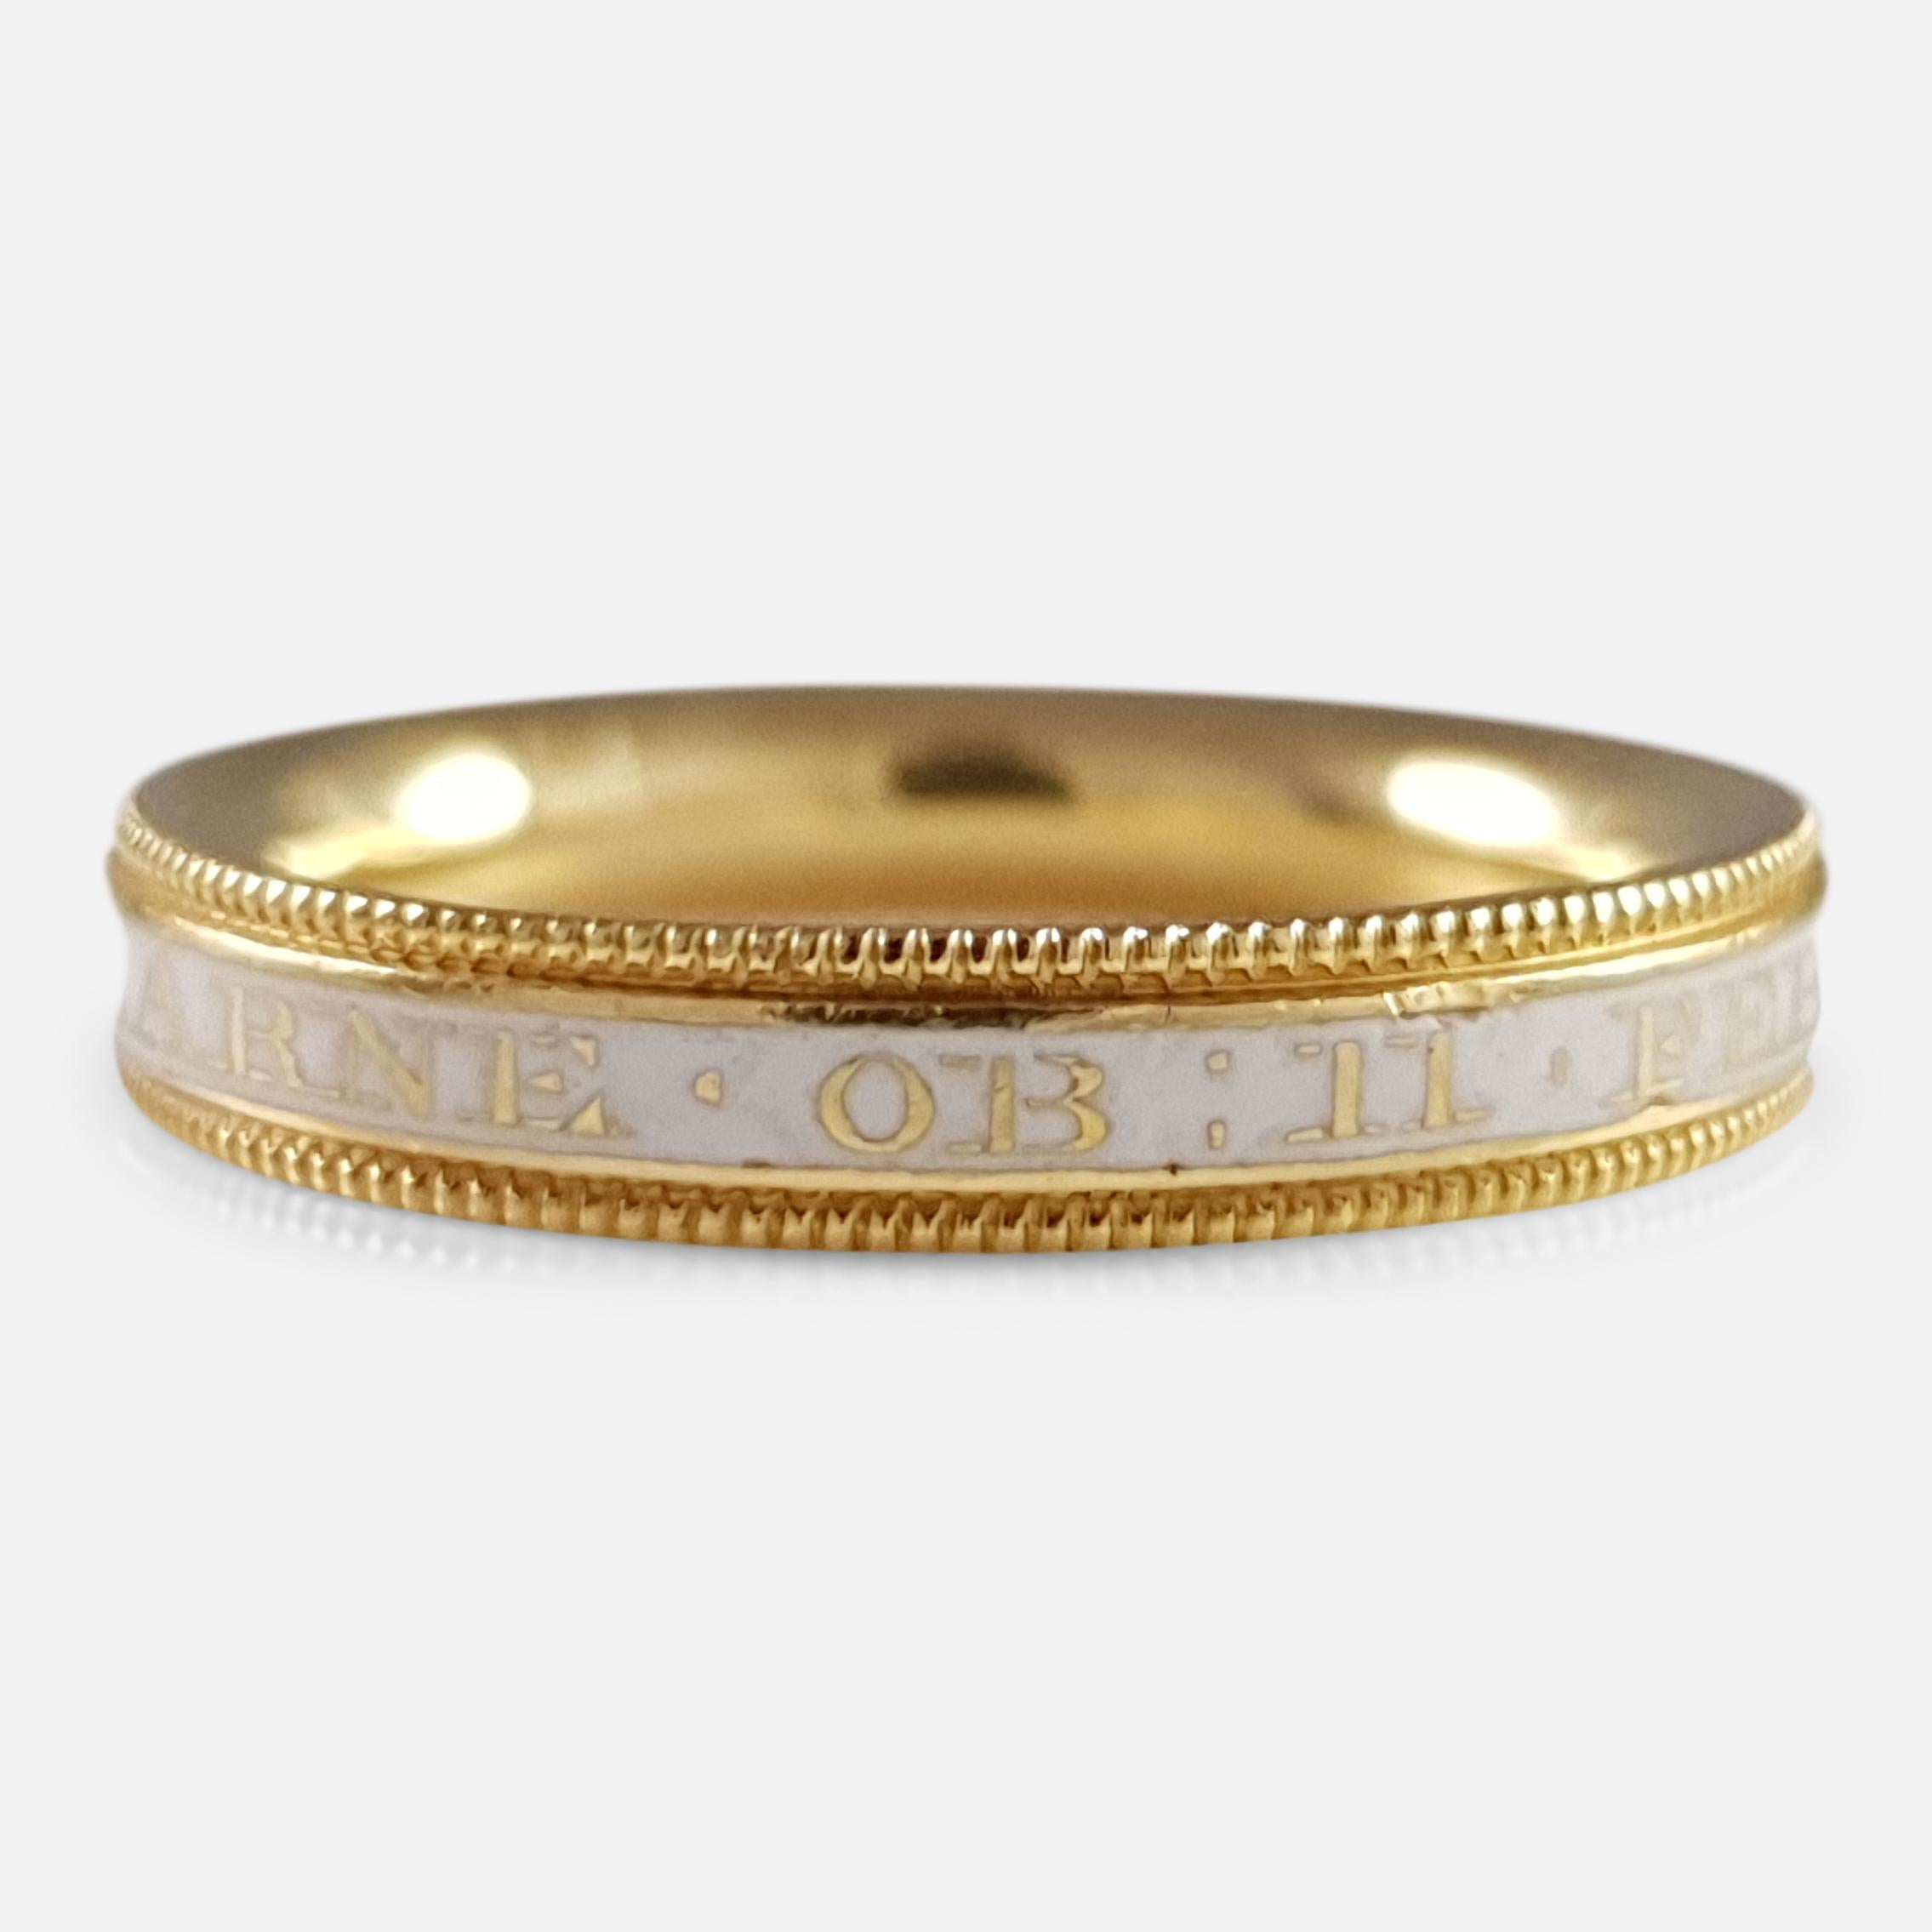 George III 18 Karat Gold and Enamel Mourning Band Ring, circa 1781 1